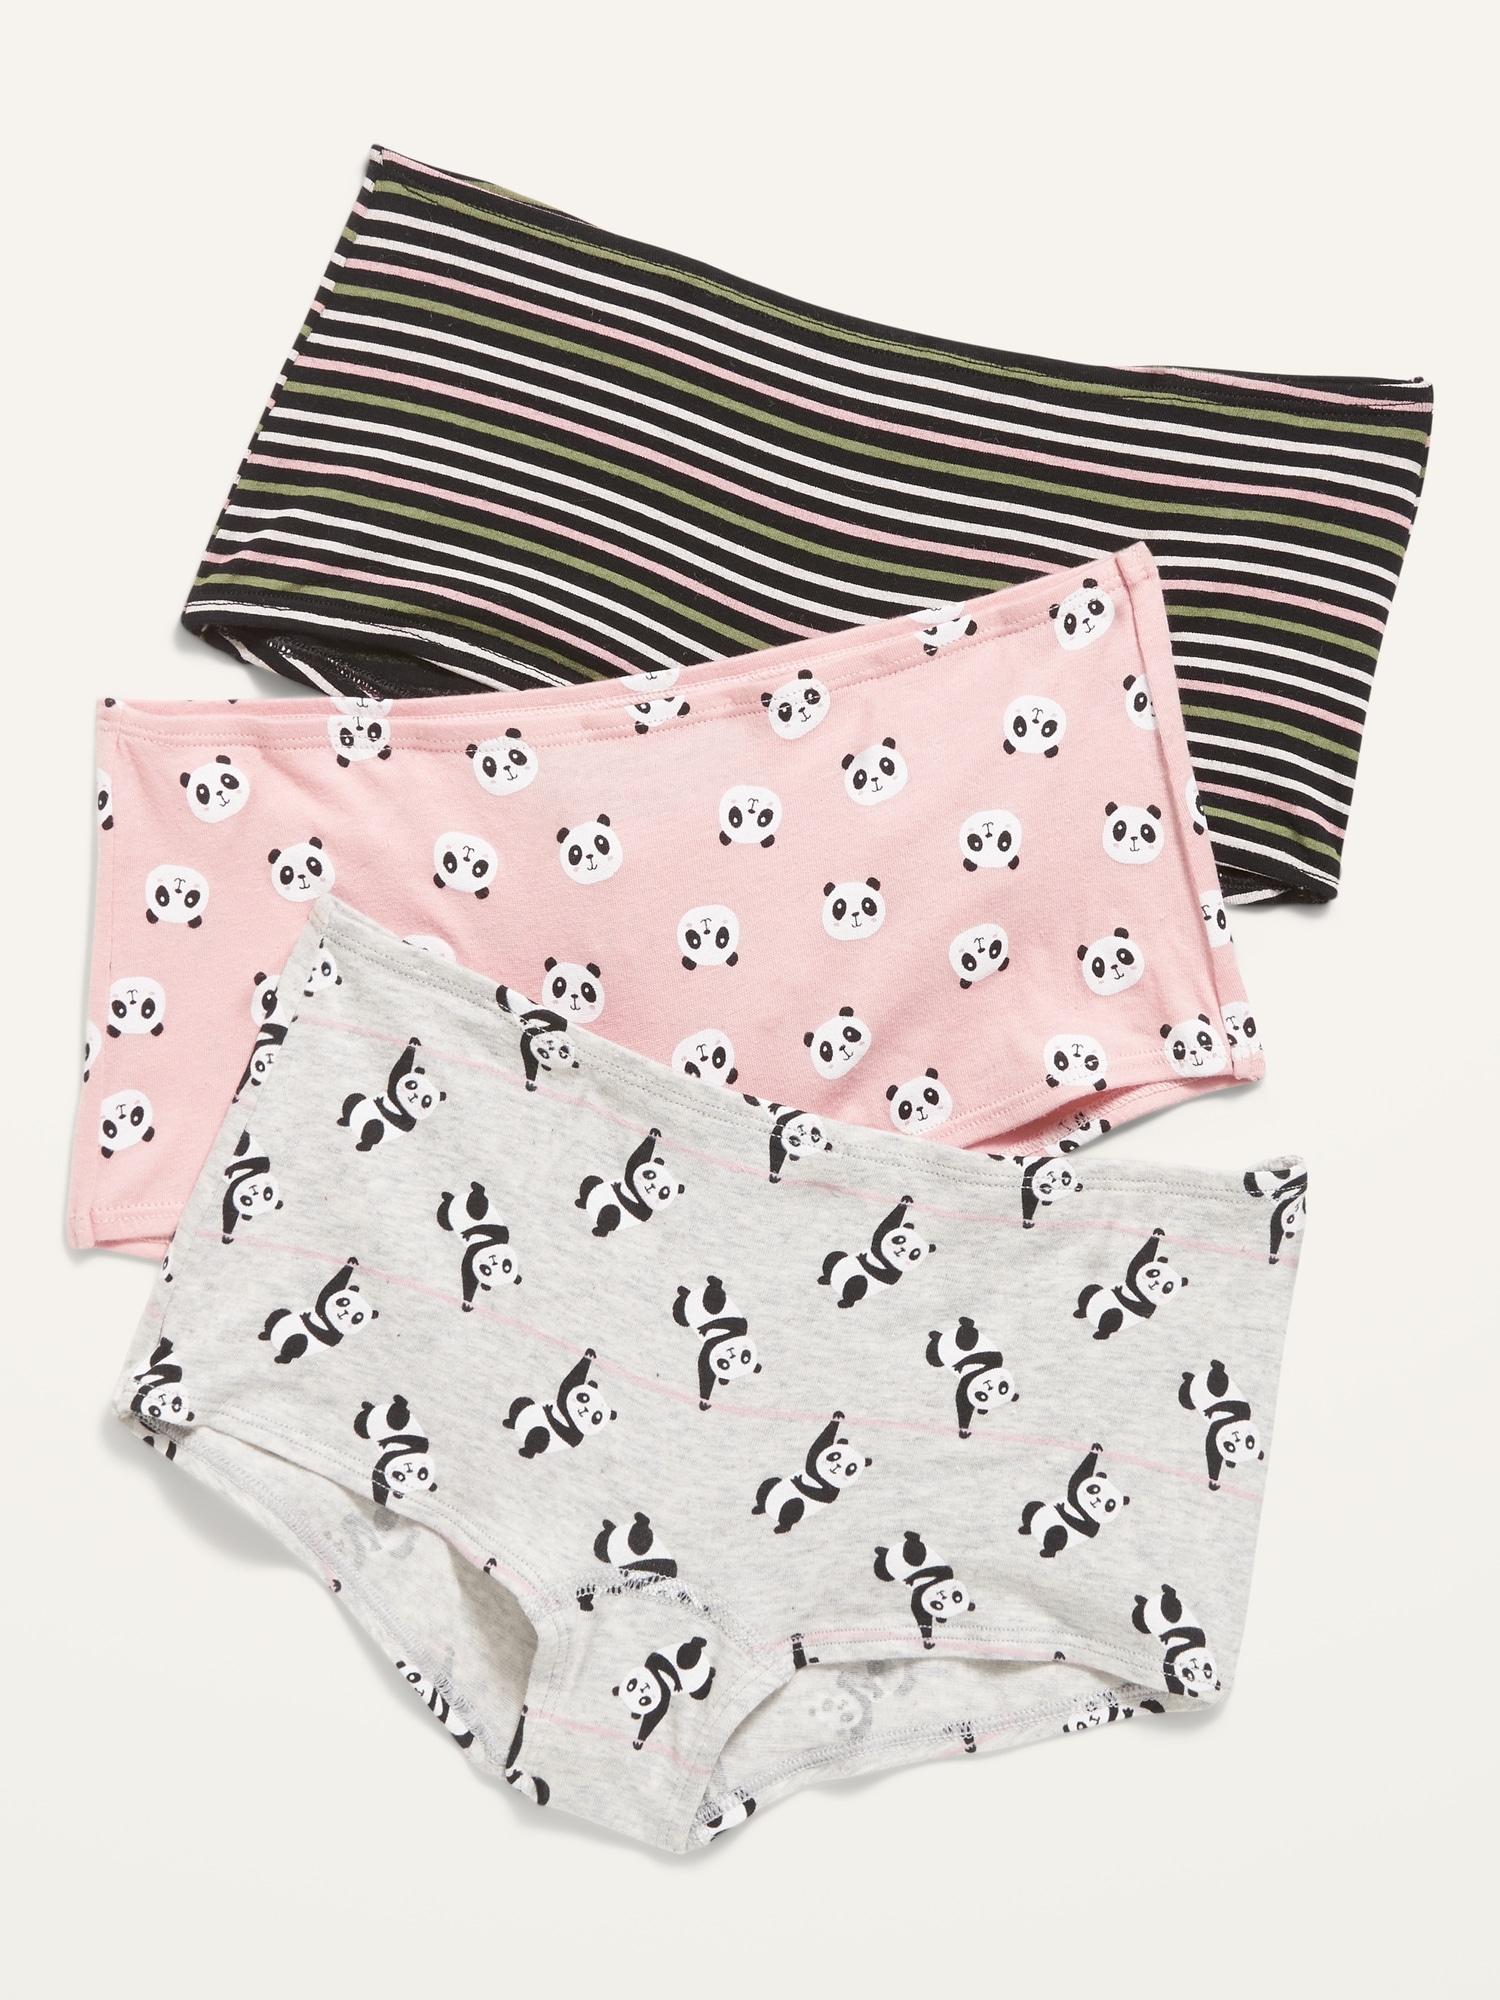 Little Girls' Shorts Panties Boyshort Briefs Kids 3 Pack Soft